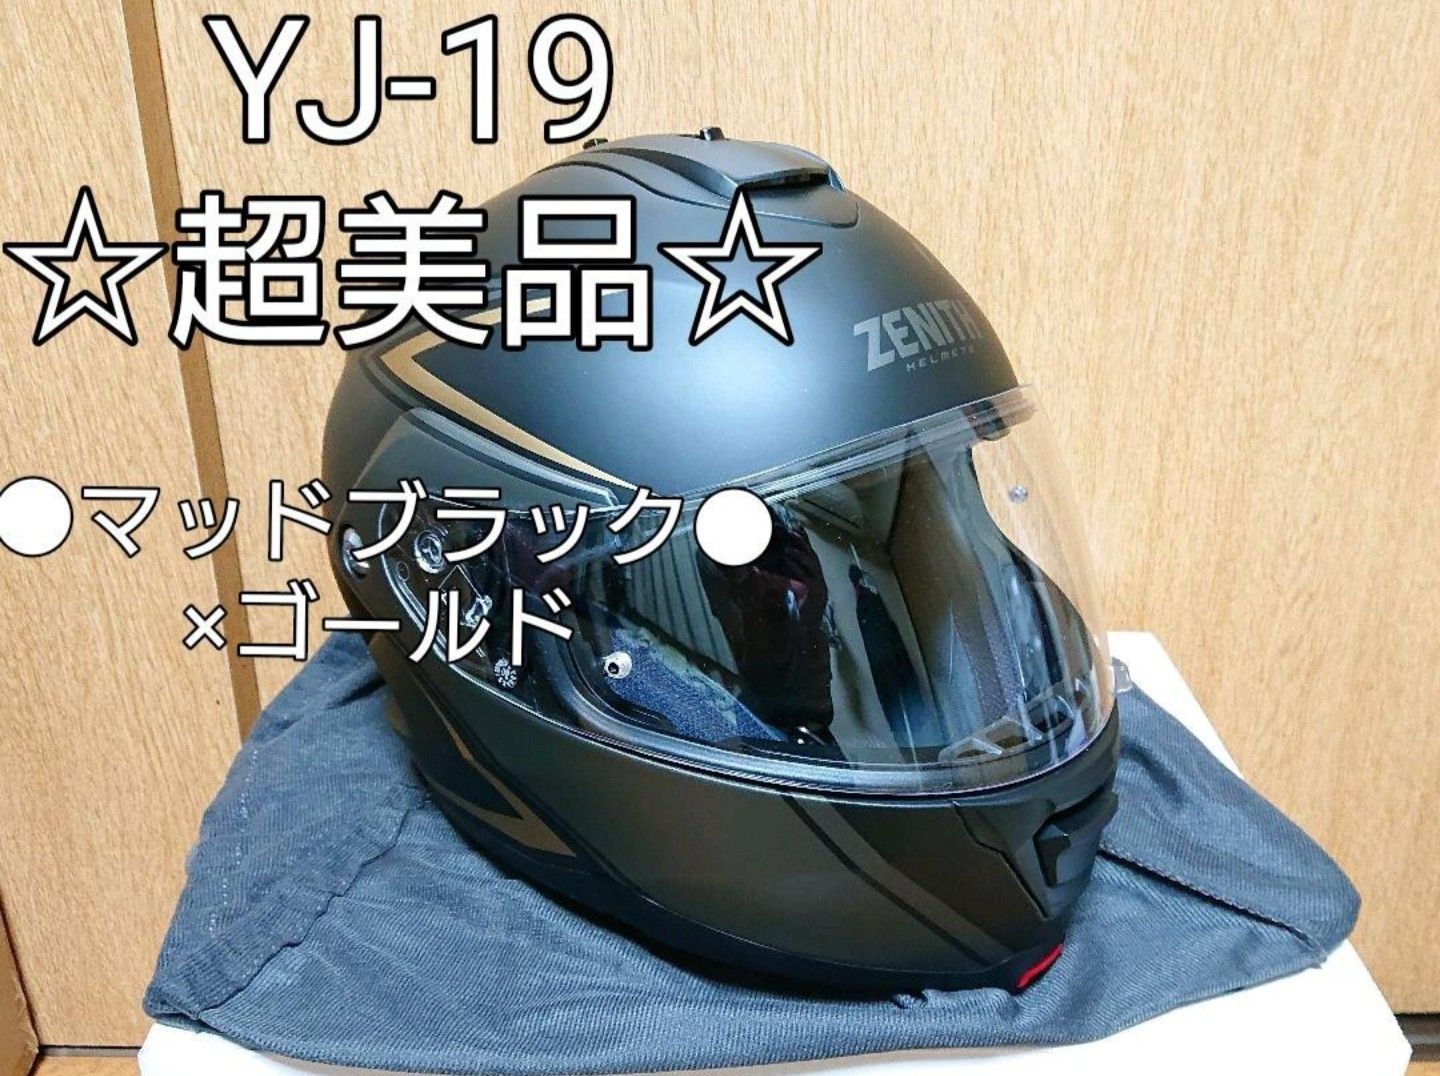 美品 YAMAHA ZENITHヘルメット YJ-19 マットブラック - セキュリティ 